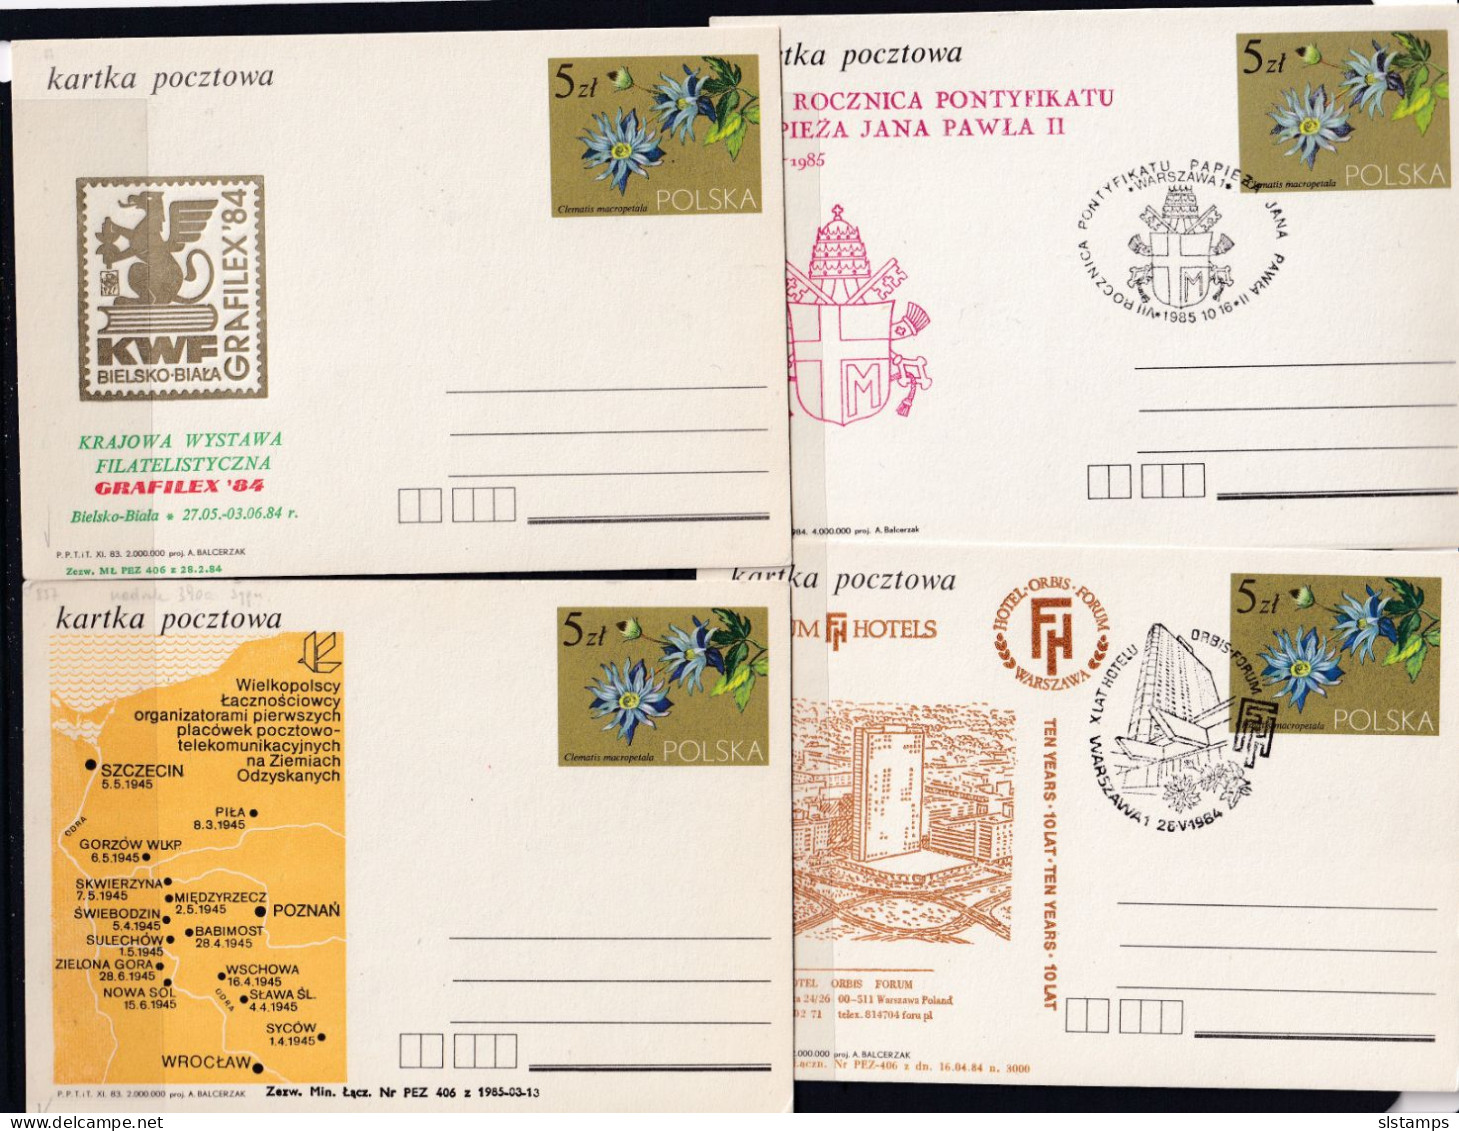 Poland 10 Postal Stationary Cards Special Cancel 5 Zl 16121 - Poland